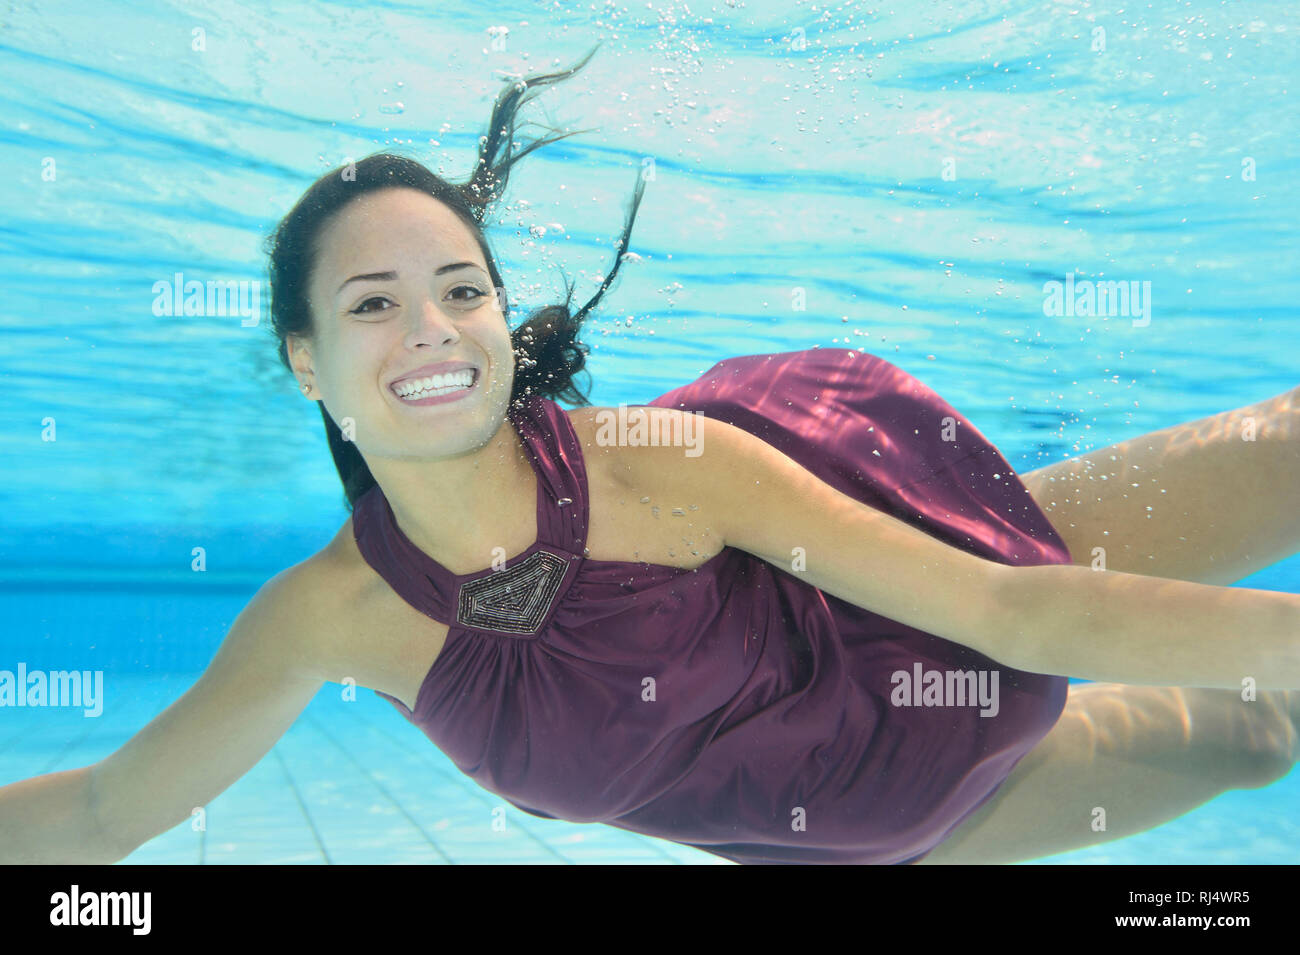 Frau, jung, Kleid, Freibad, Unterwasser, schwimmen, Blick Kamera Stock Photo